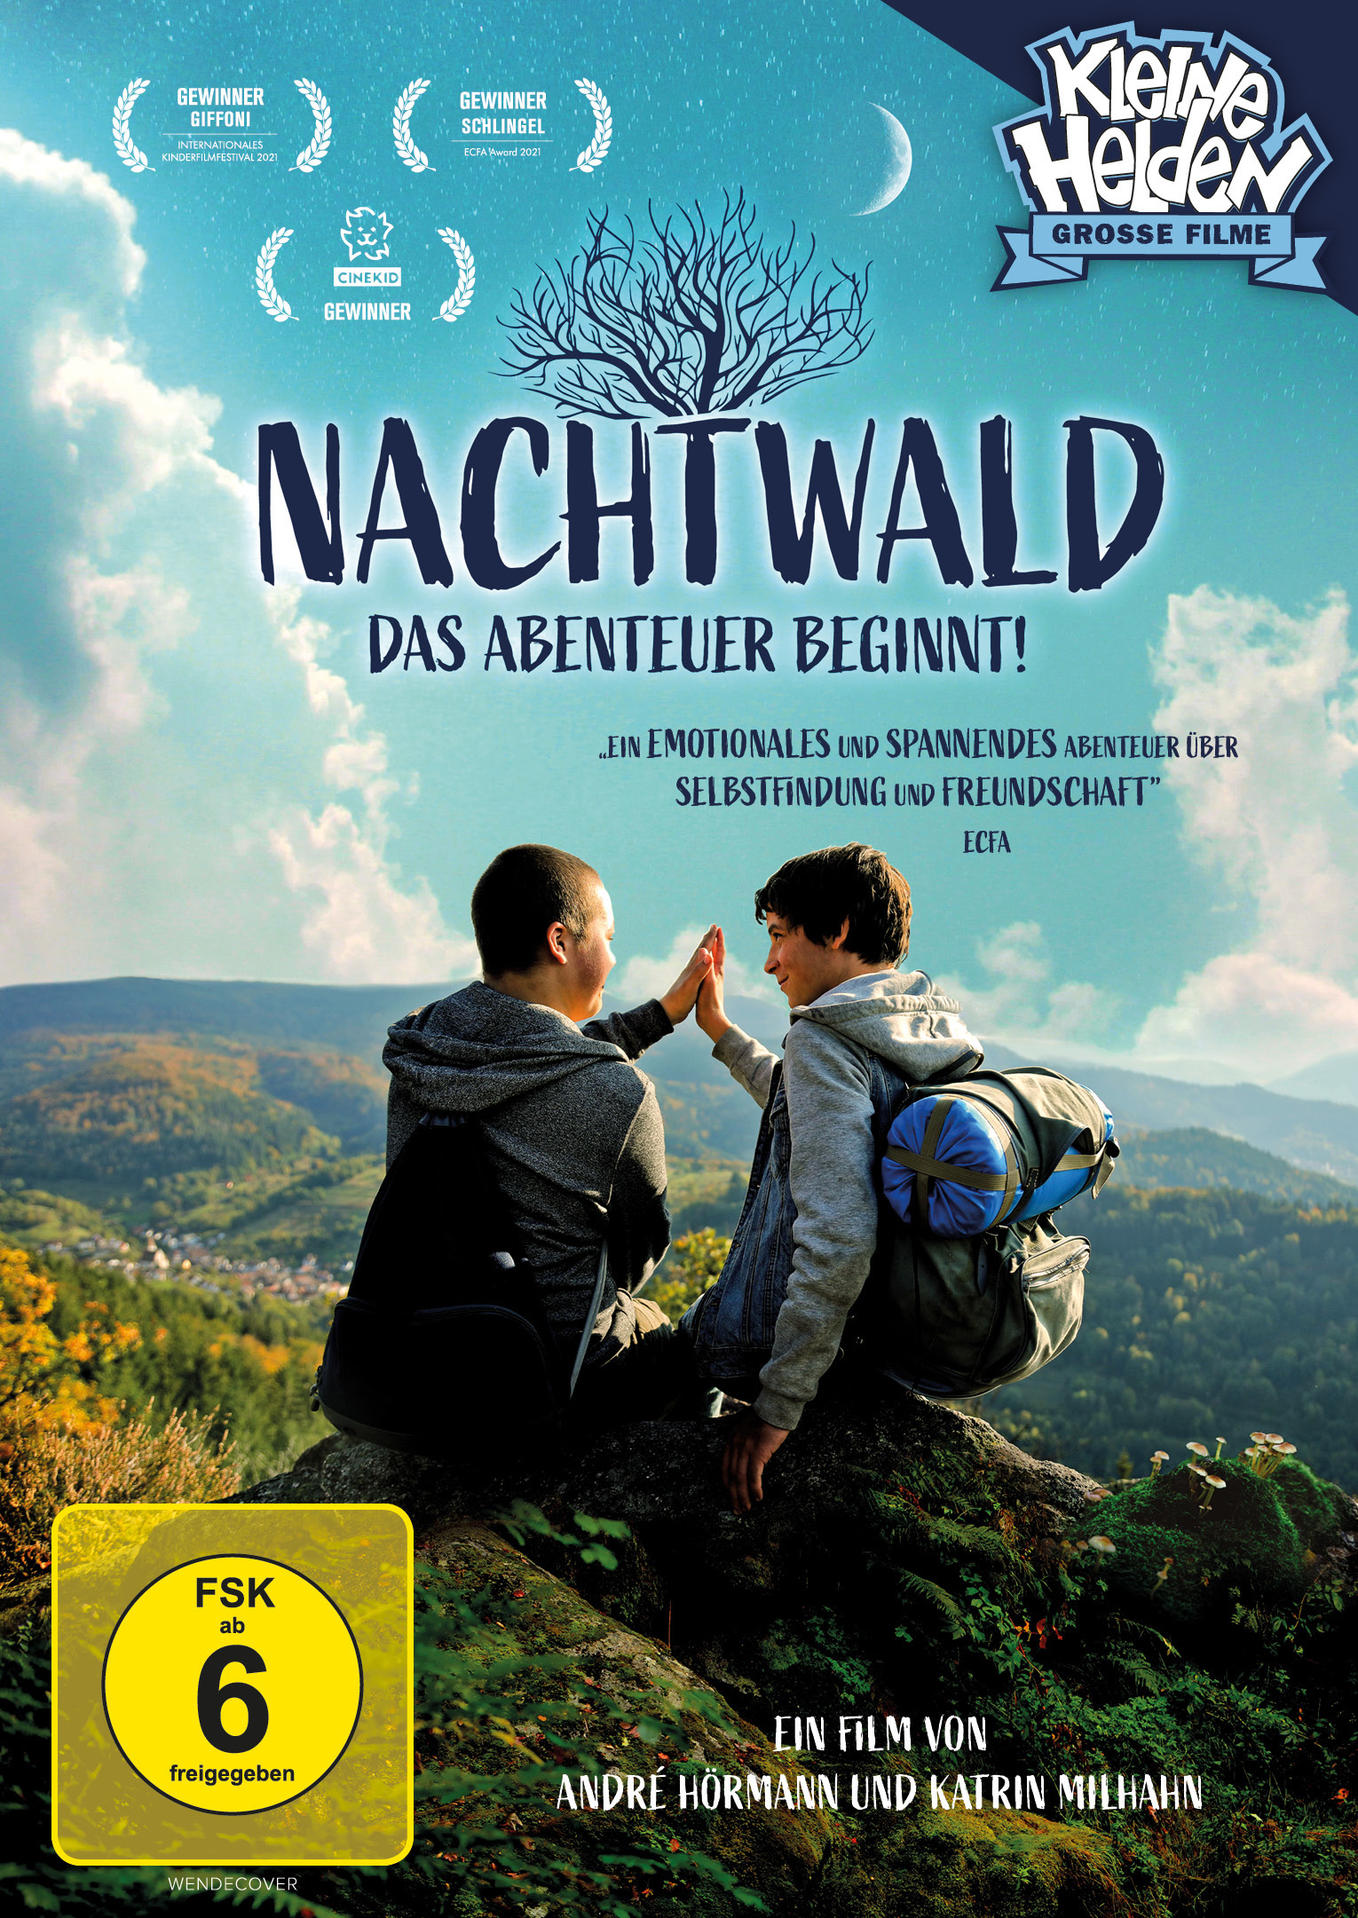 Nachtwald - Das Abenteuer beginnt! DVD